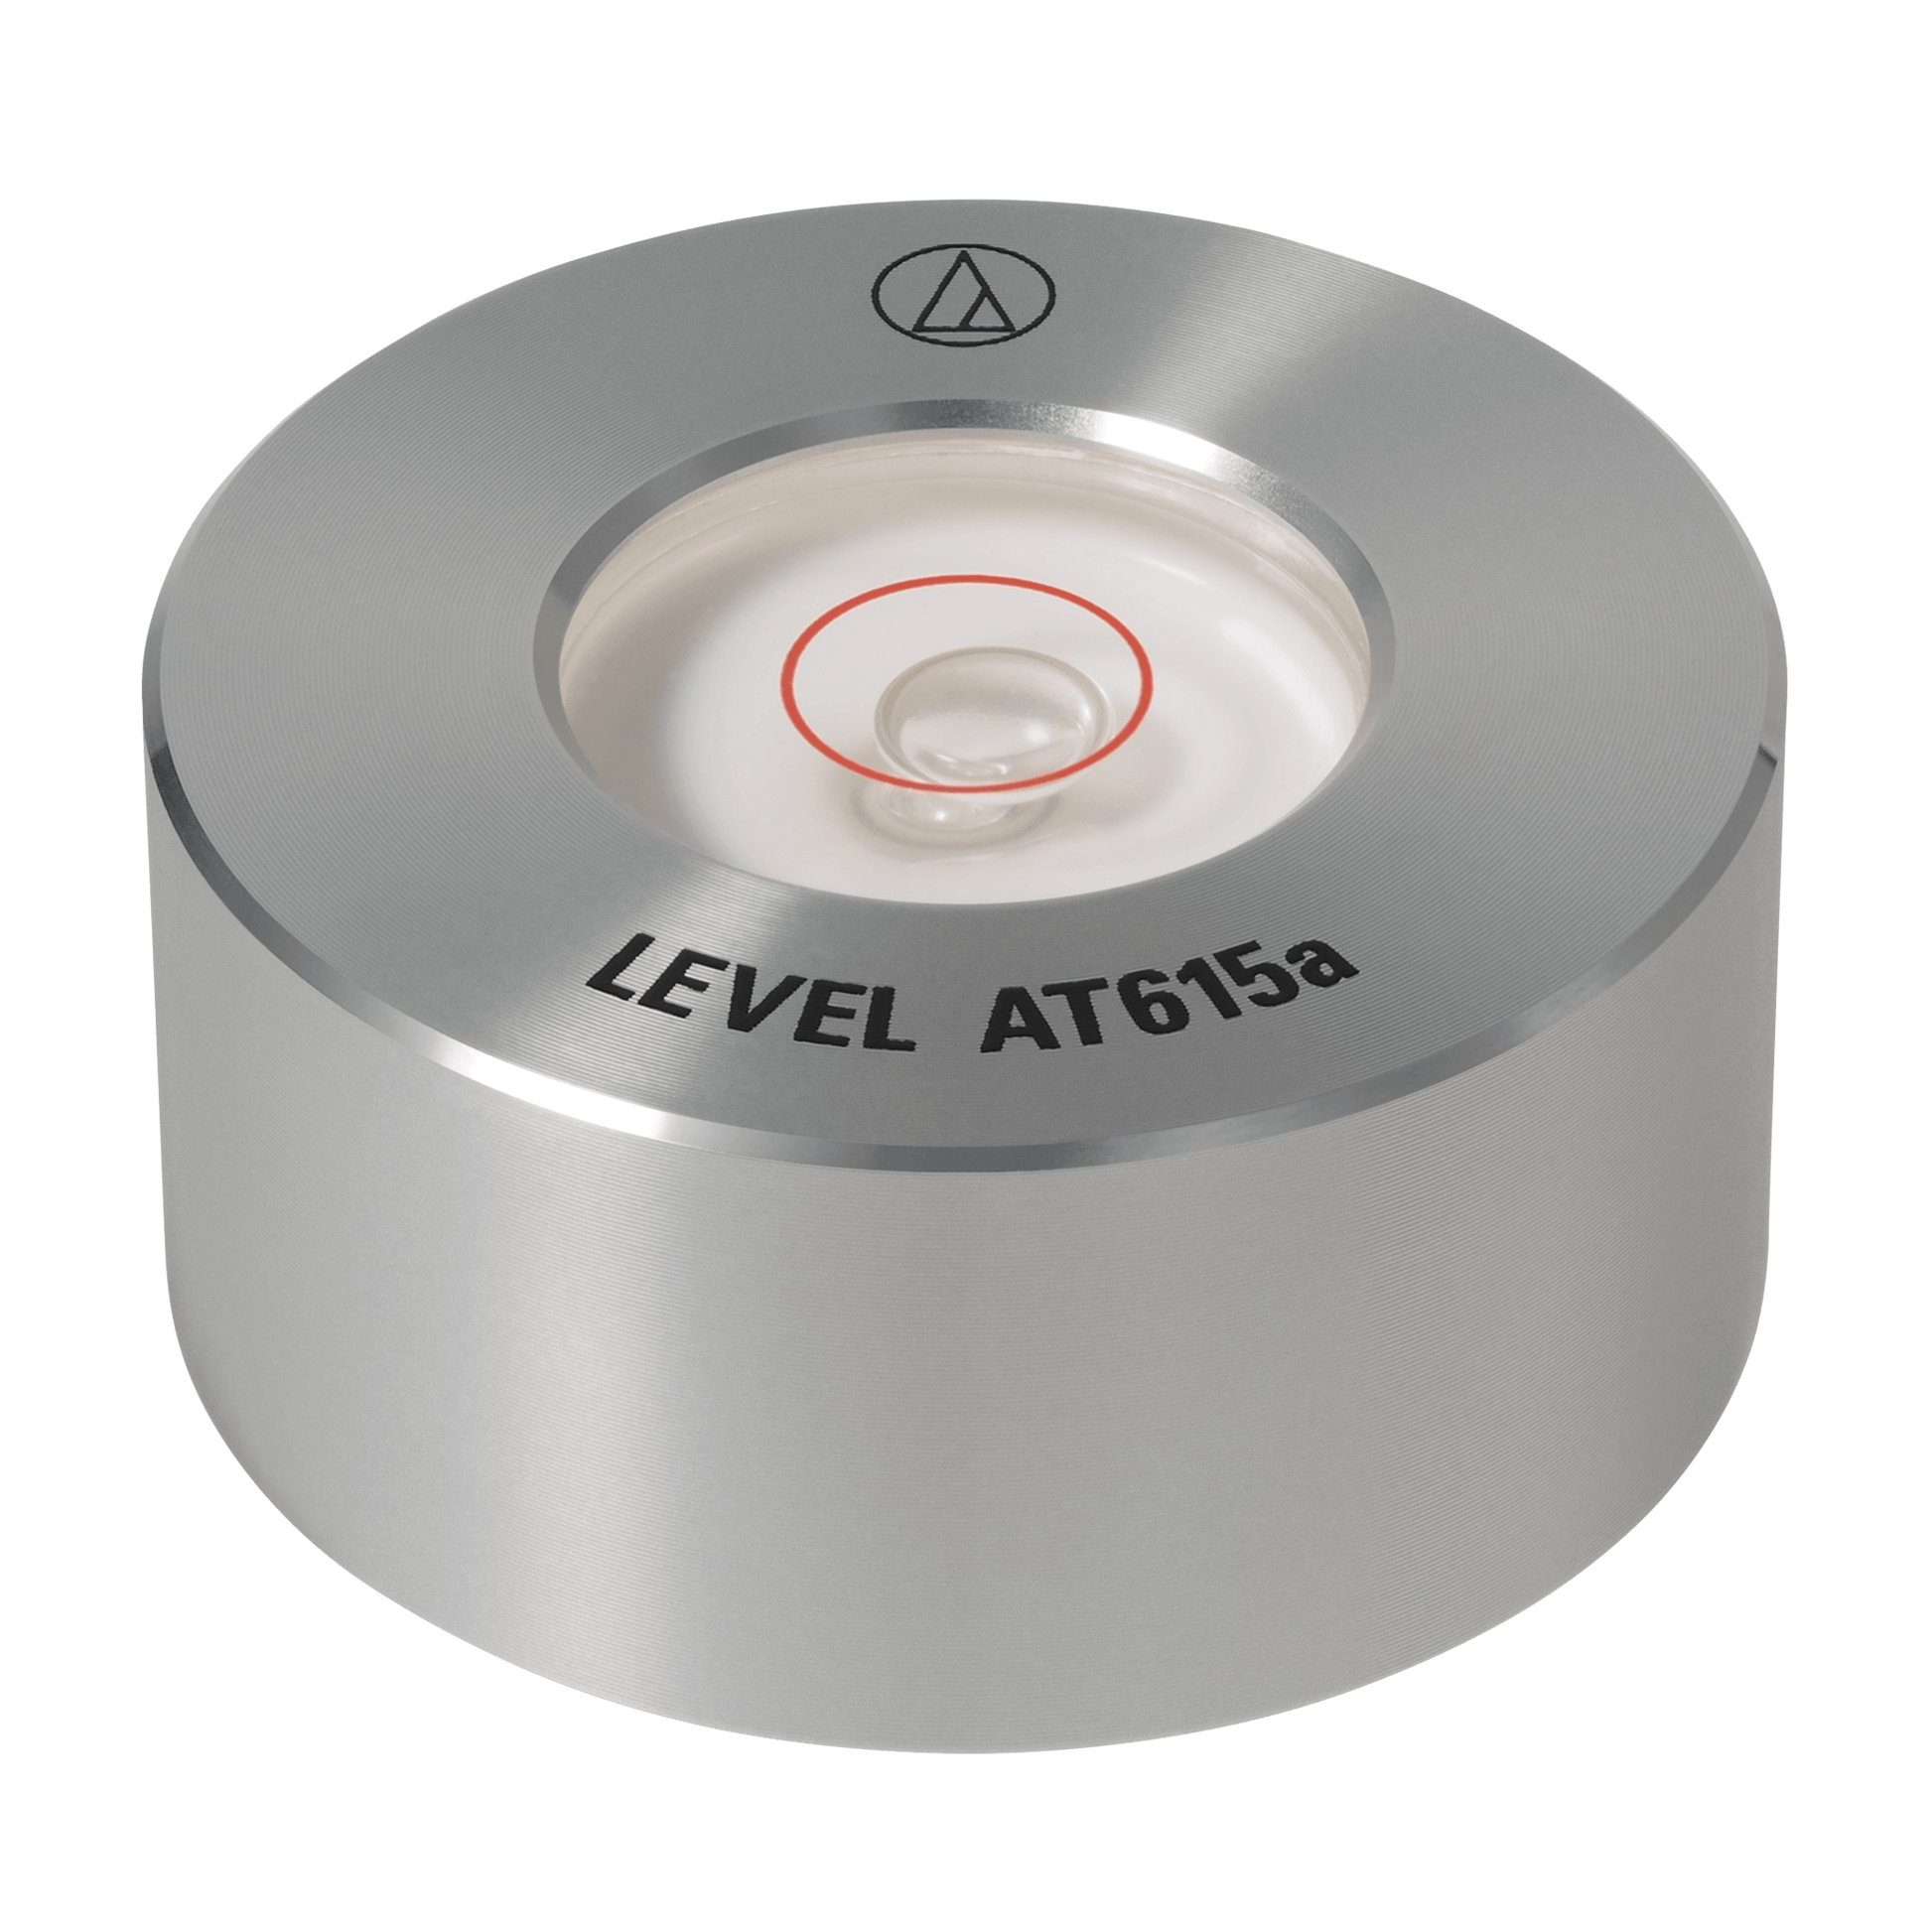 AT615a Bubble Leveller-Turntable Accessories-Audio-Technica-PremiumHIFI